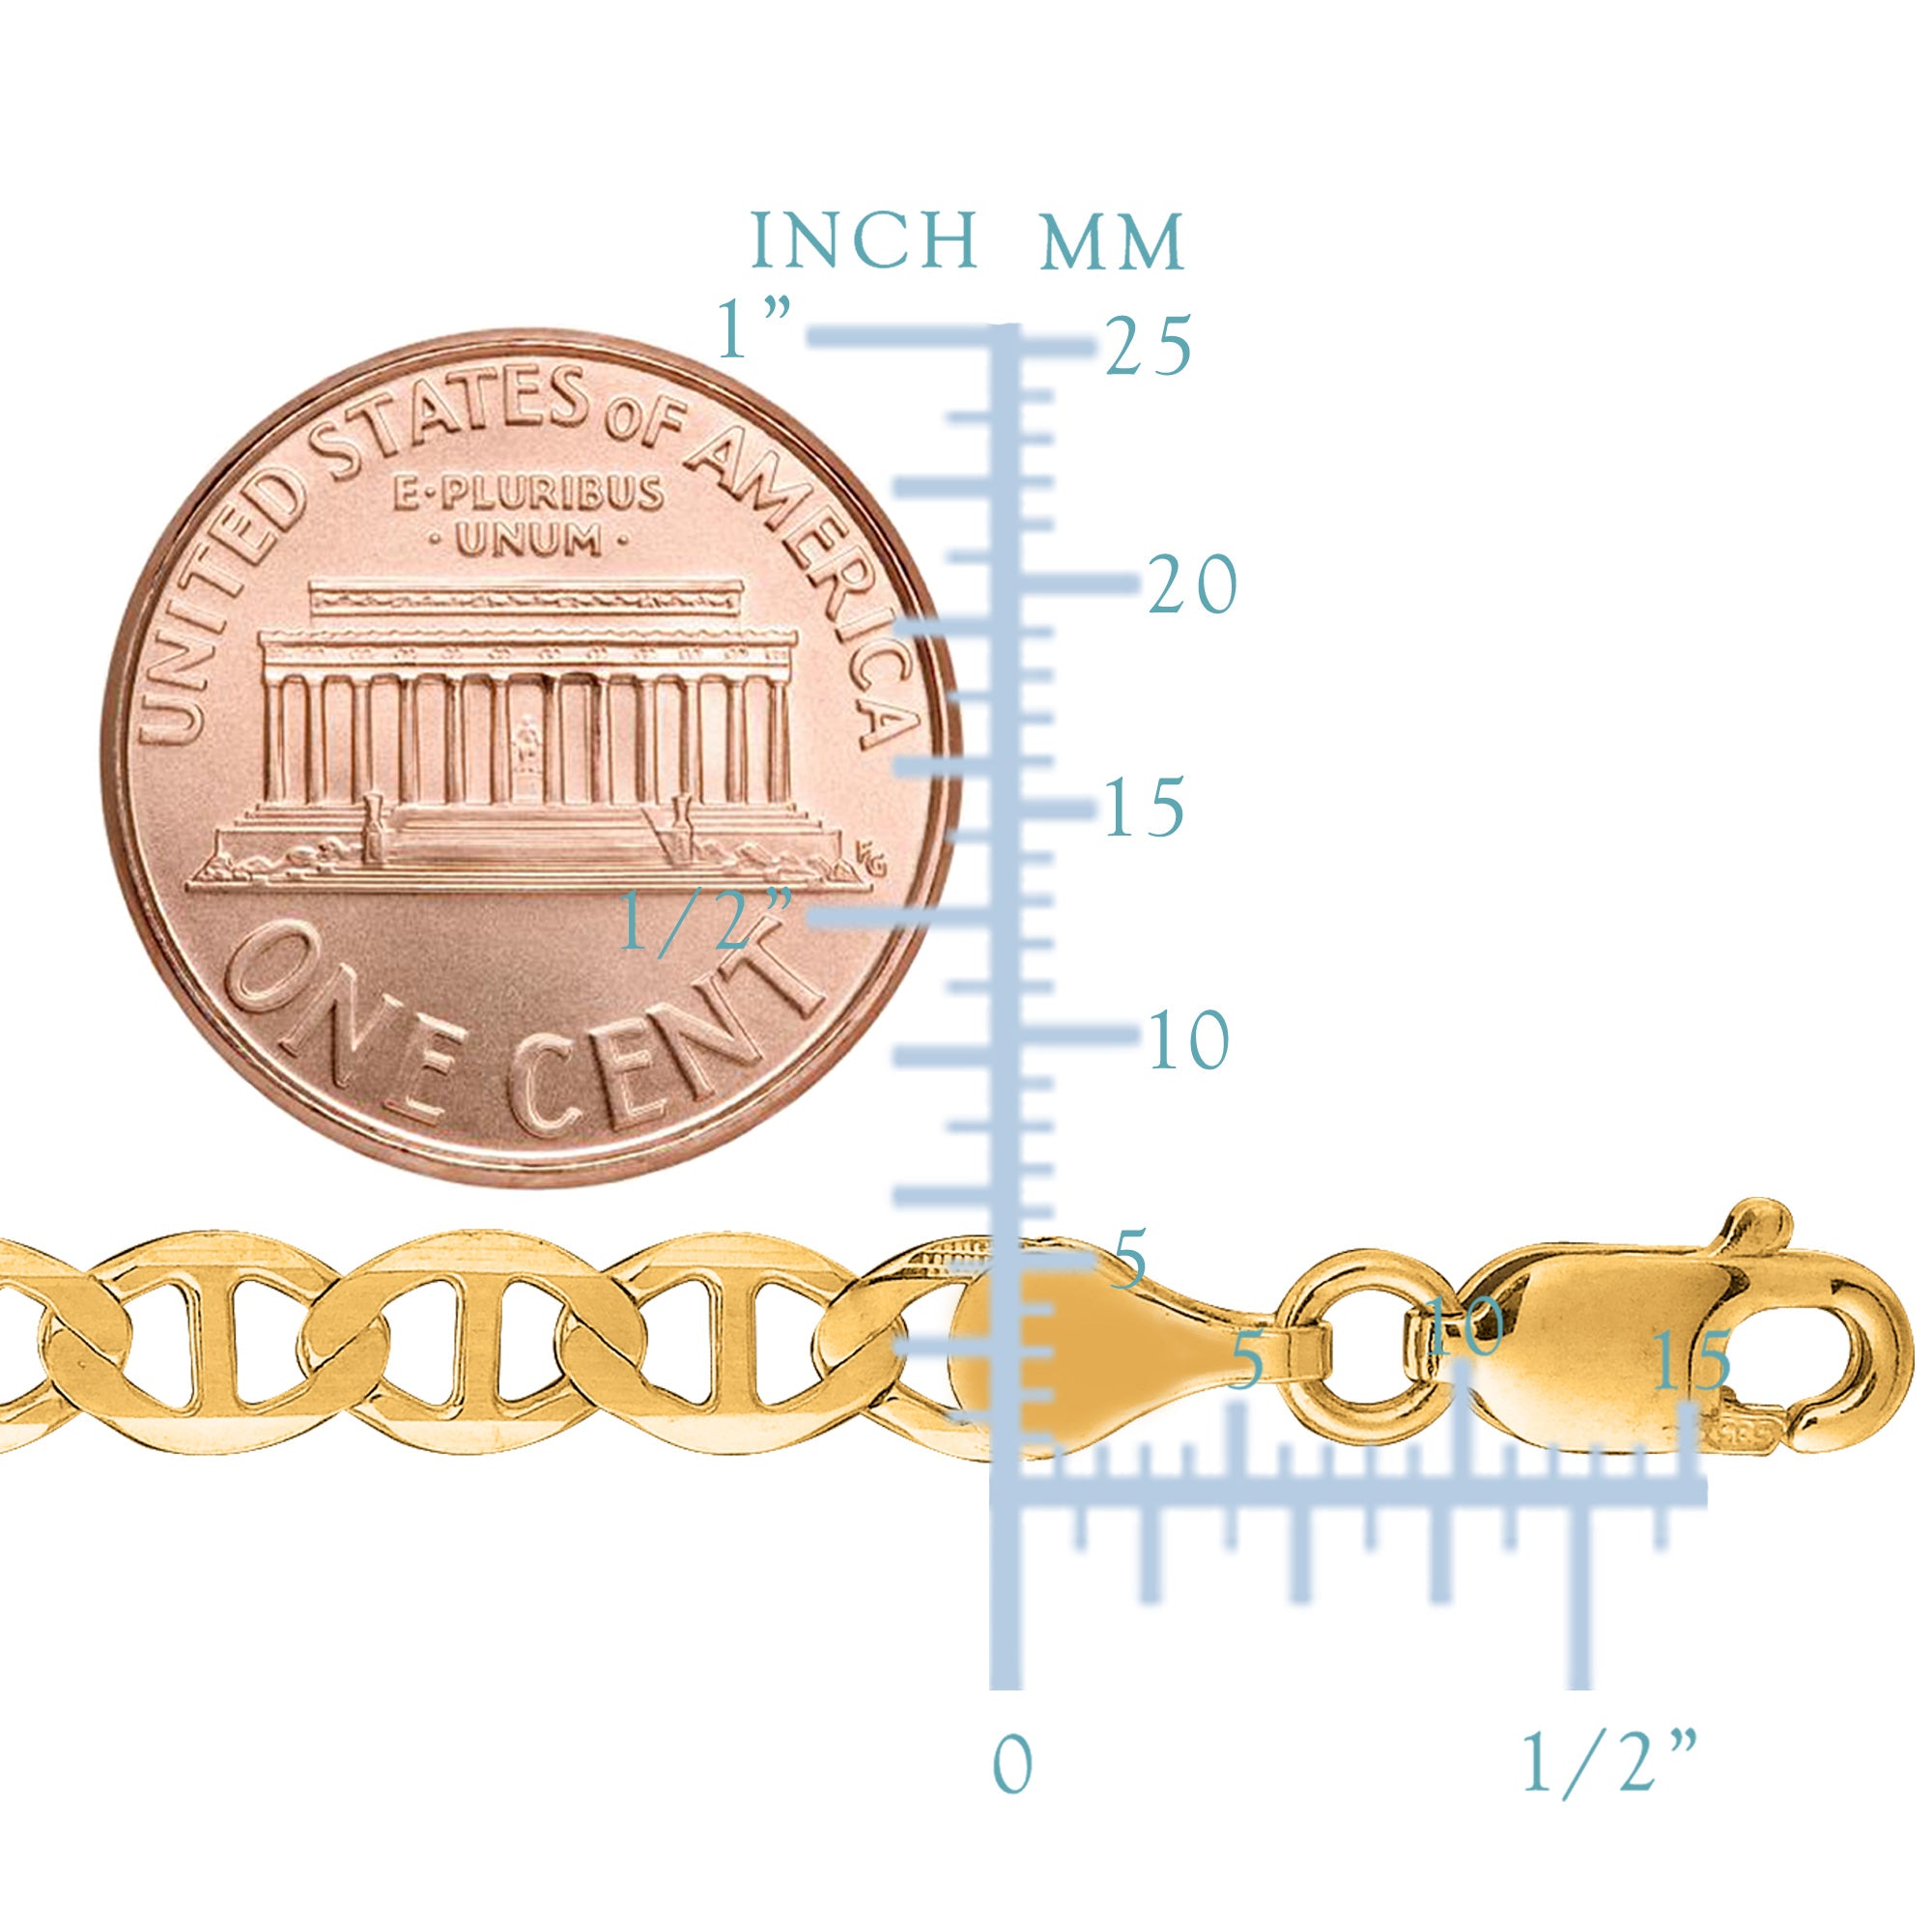 Mariner Link Chain Armbånd i 10 k gult guld, 5,1 mm fine designersmykker til mænd og kvinder